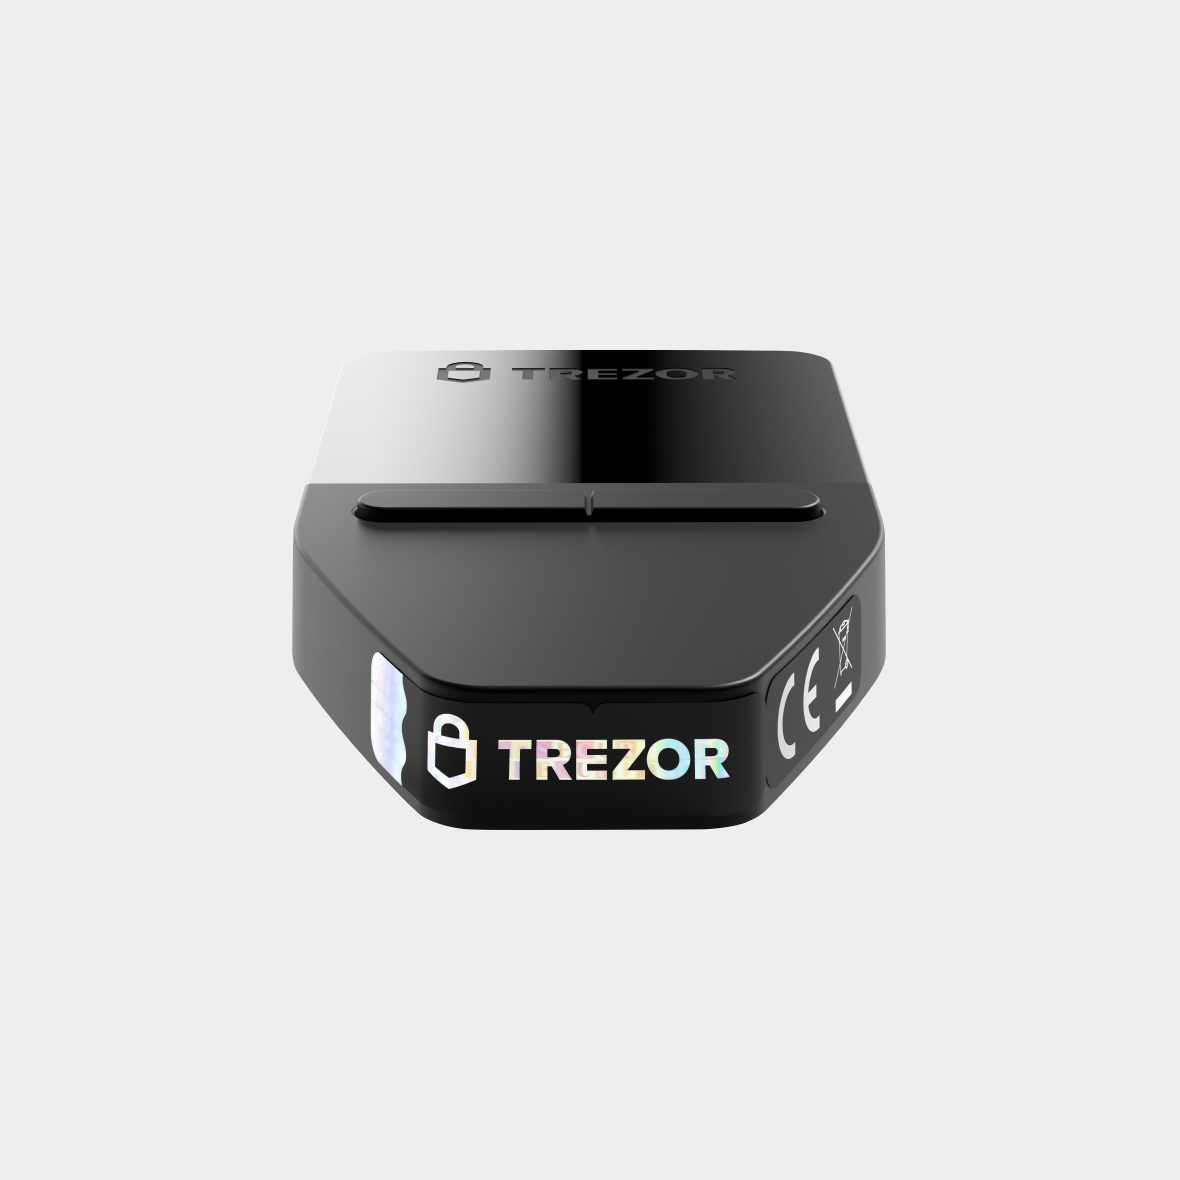 Trezor Safe 3 - Solar Gold - Hardware wallet - Trezor Official Partner - bitcoinlove.fun